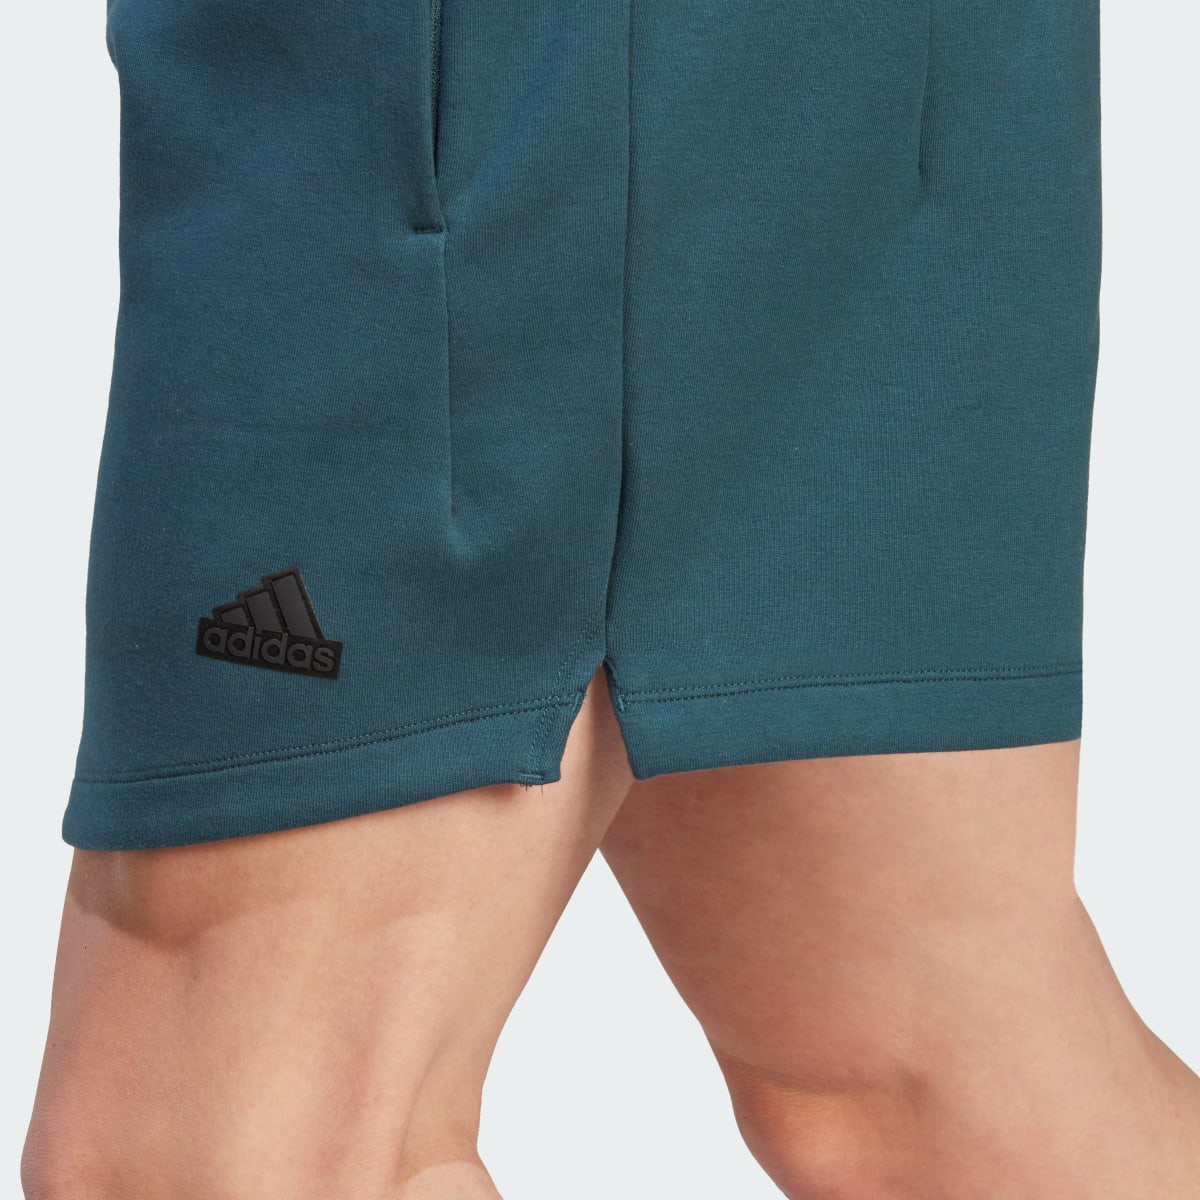 Adidas Z.N.E. Premium Shorts. 6